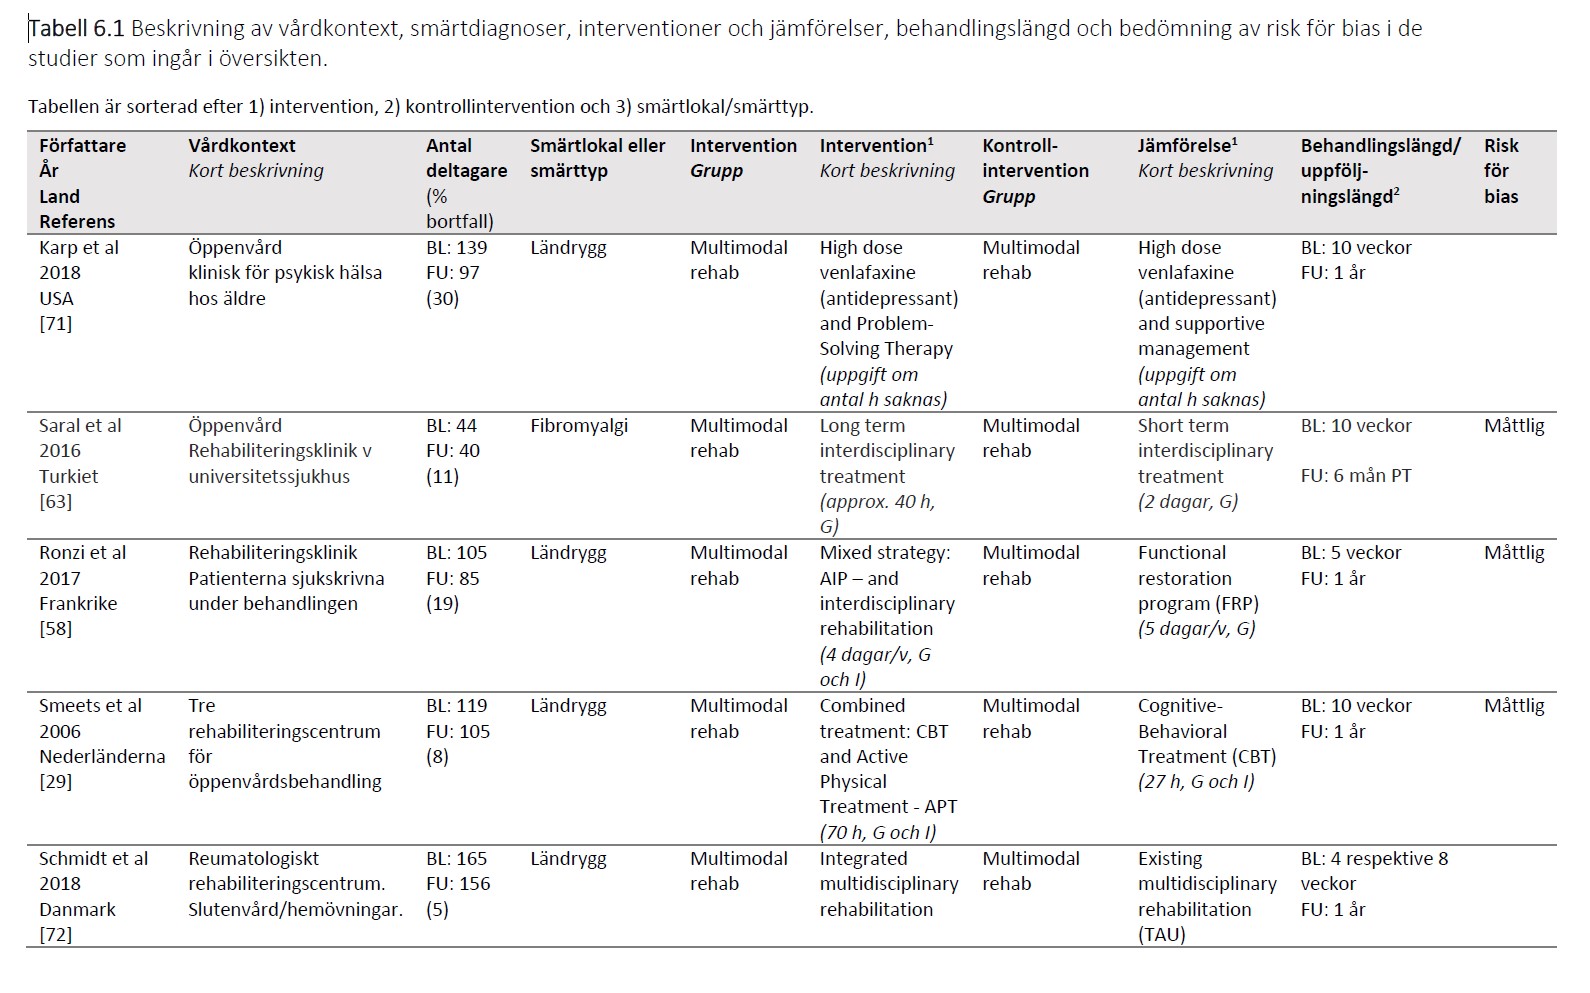 Skärmklipp av tabell 6.1 beskrivning av vårdkontext, smärtdiagnoser, interventioner med mera